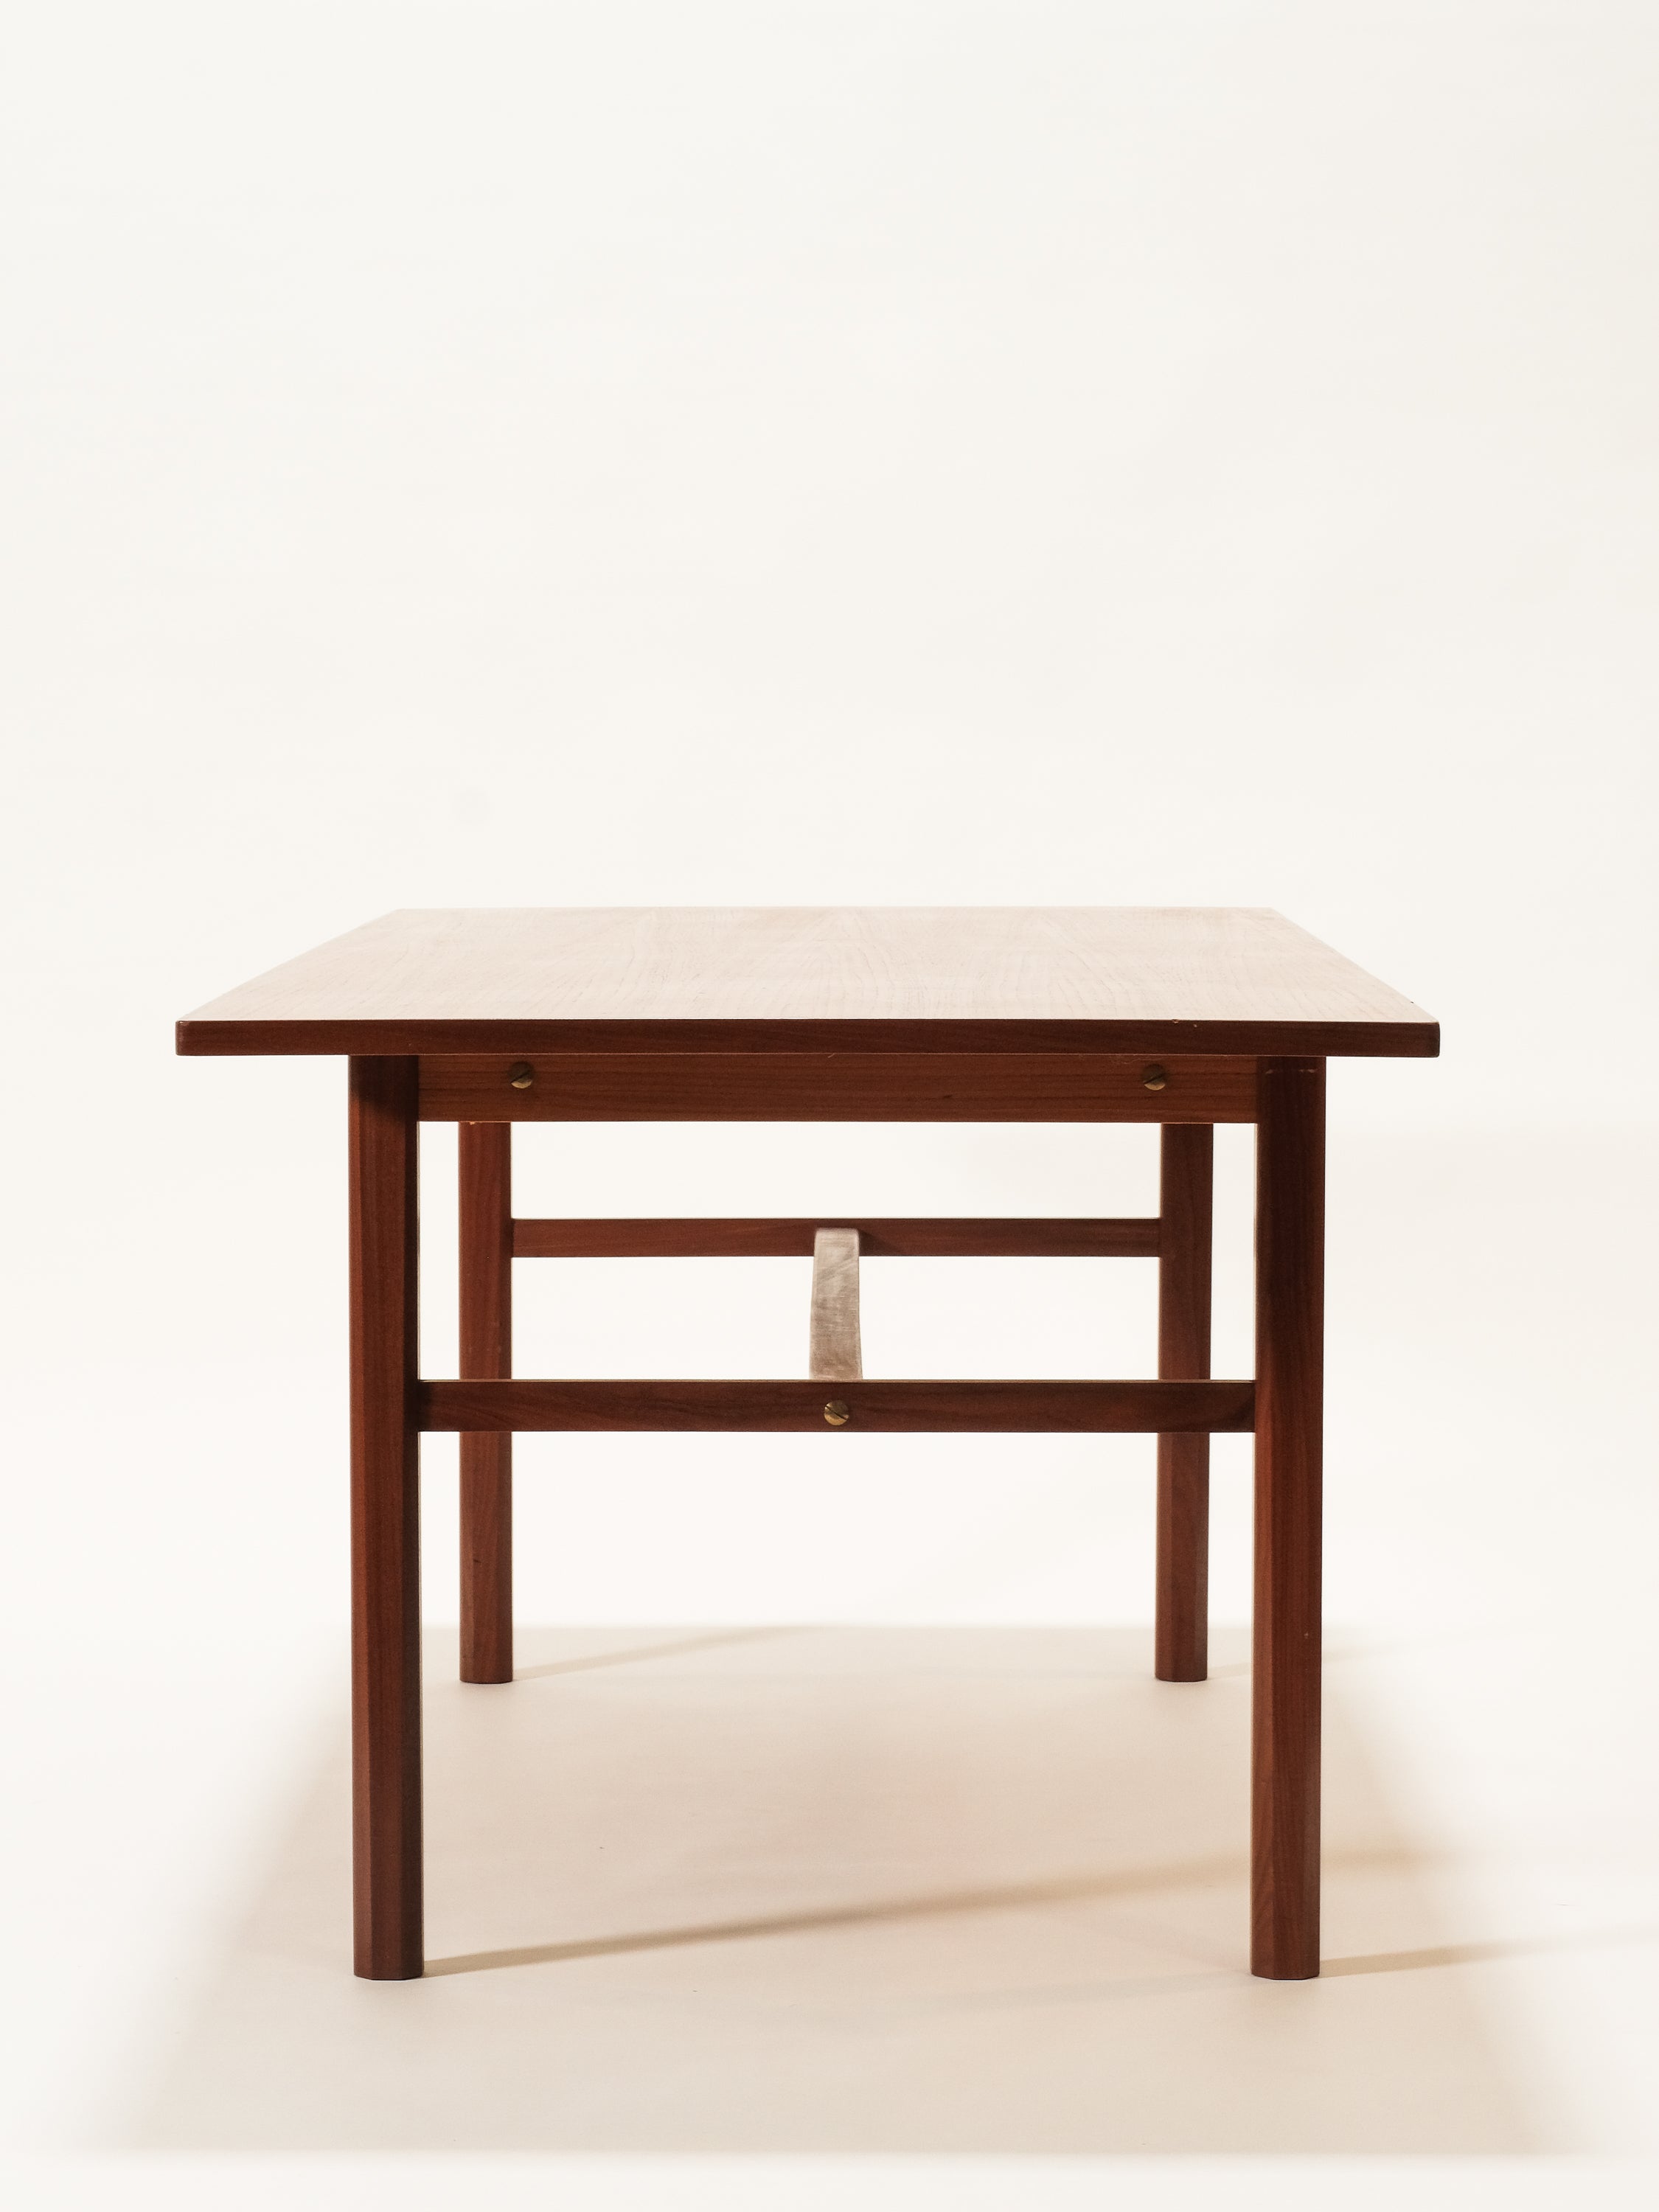 Large Mid-Century Modern Teak Dining Table